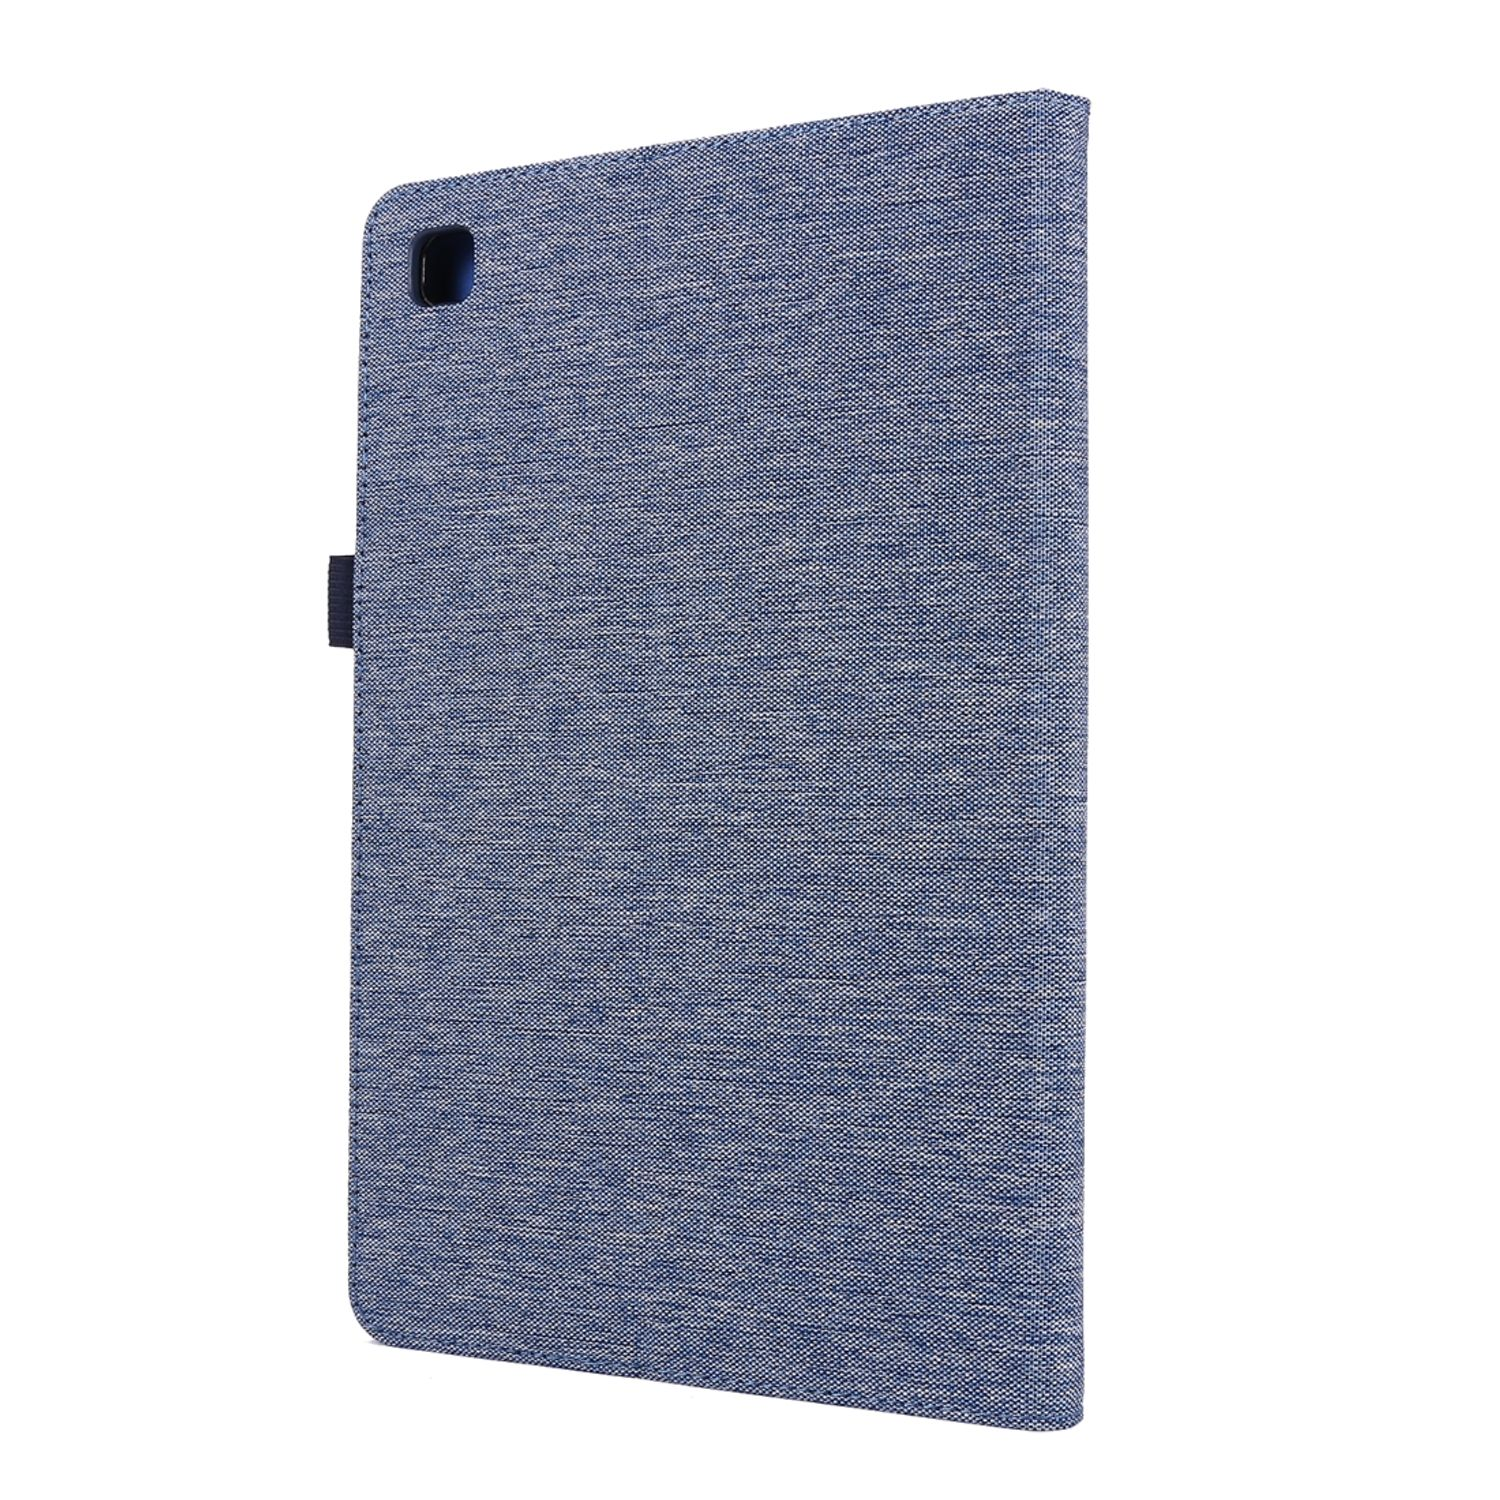 Tablet Blau Samsung Schutzcover Kunstleder, Hülle Bookcover DESIGN KÖNIG für